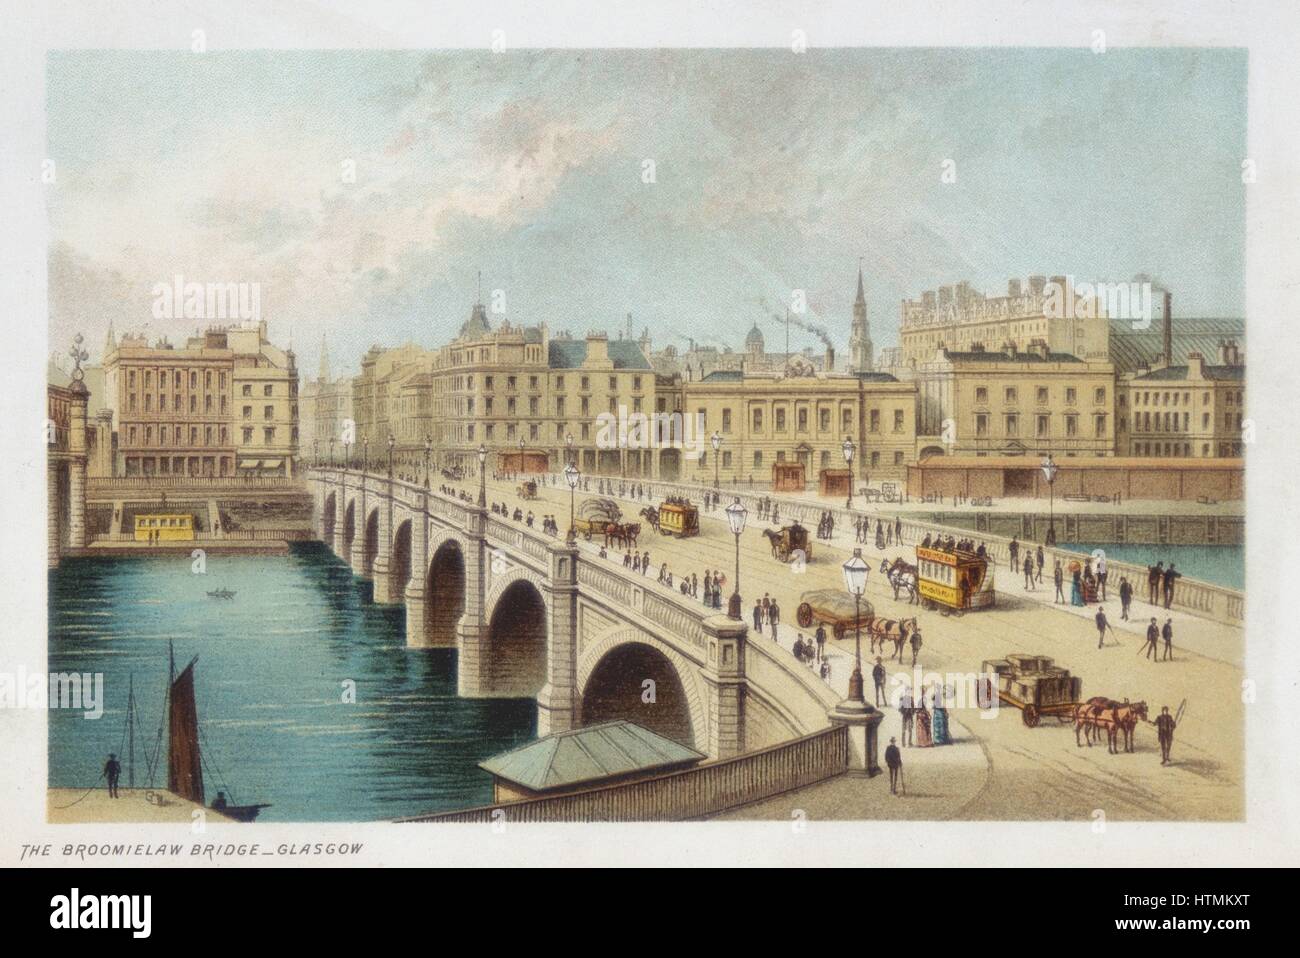 Thomas Telford Brücke über den Clyde in Broomielaw, Glasgow. Seine letzte Steinbrücke begonnen 18. März 1833, eröffnet 1Januar 1836. Pferd Straßenbahnen Brücke überquert haben. Farblitho veröffentlicht 1891. Stockfoto